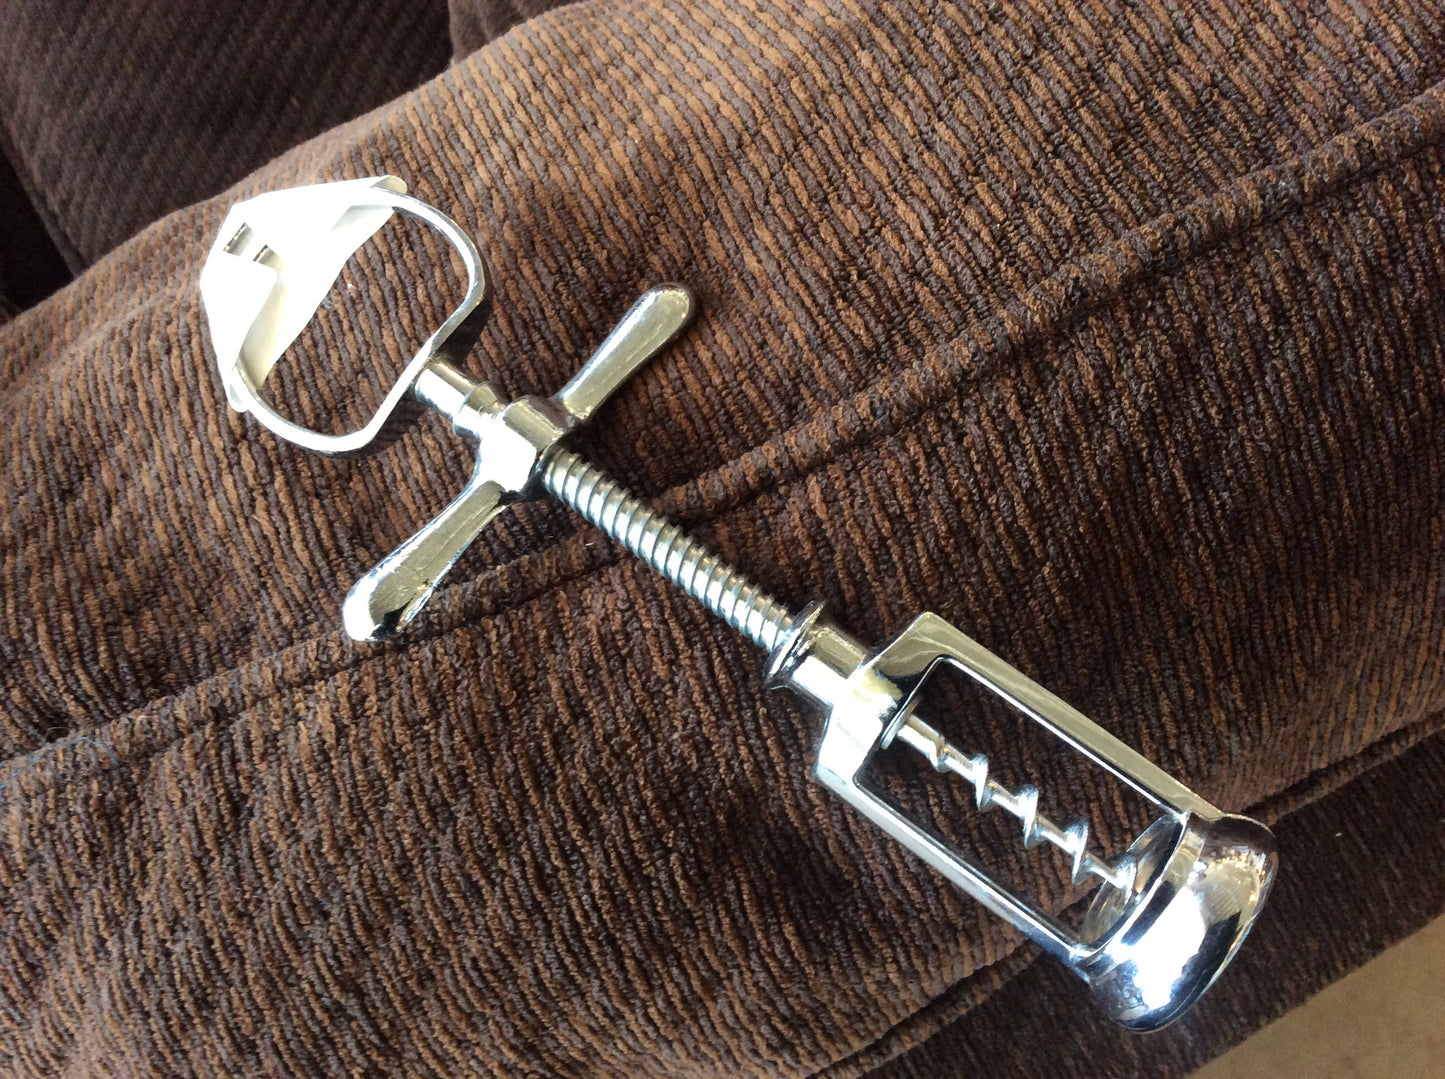 Bottle opener/corkscrew